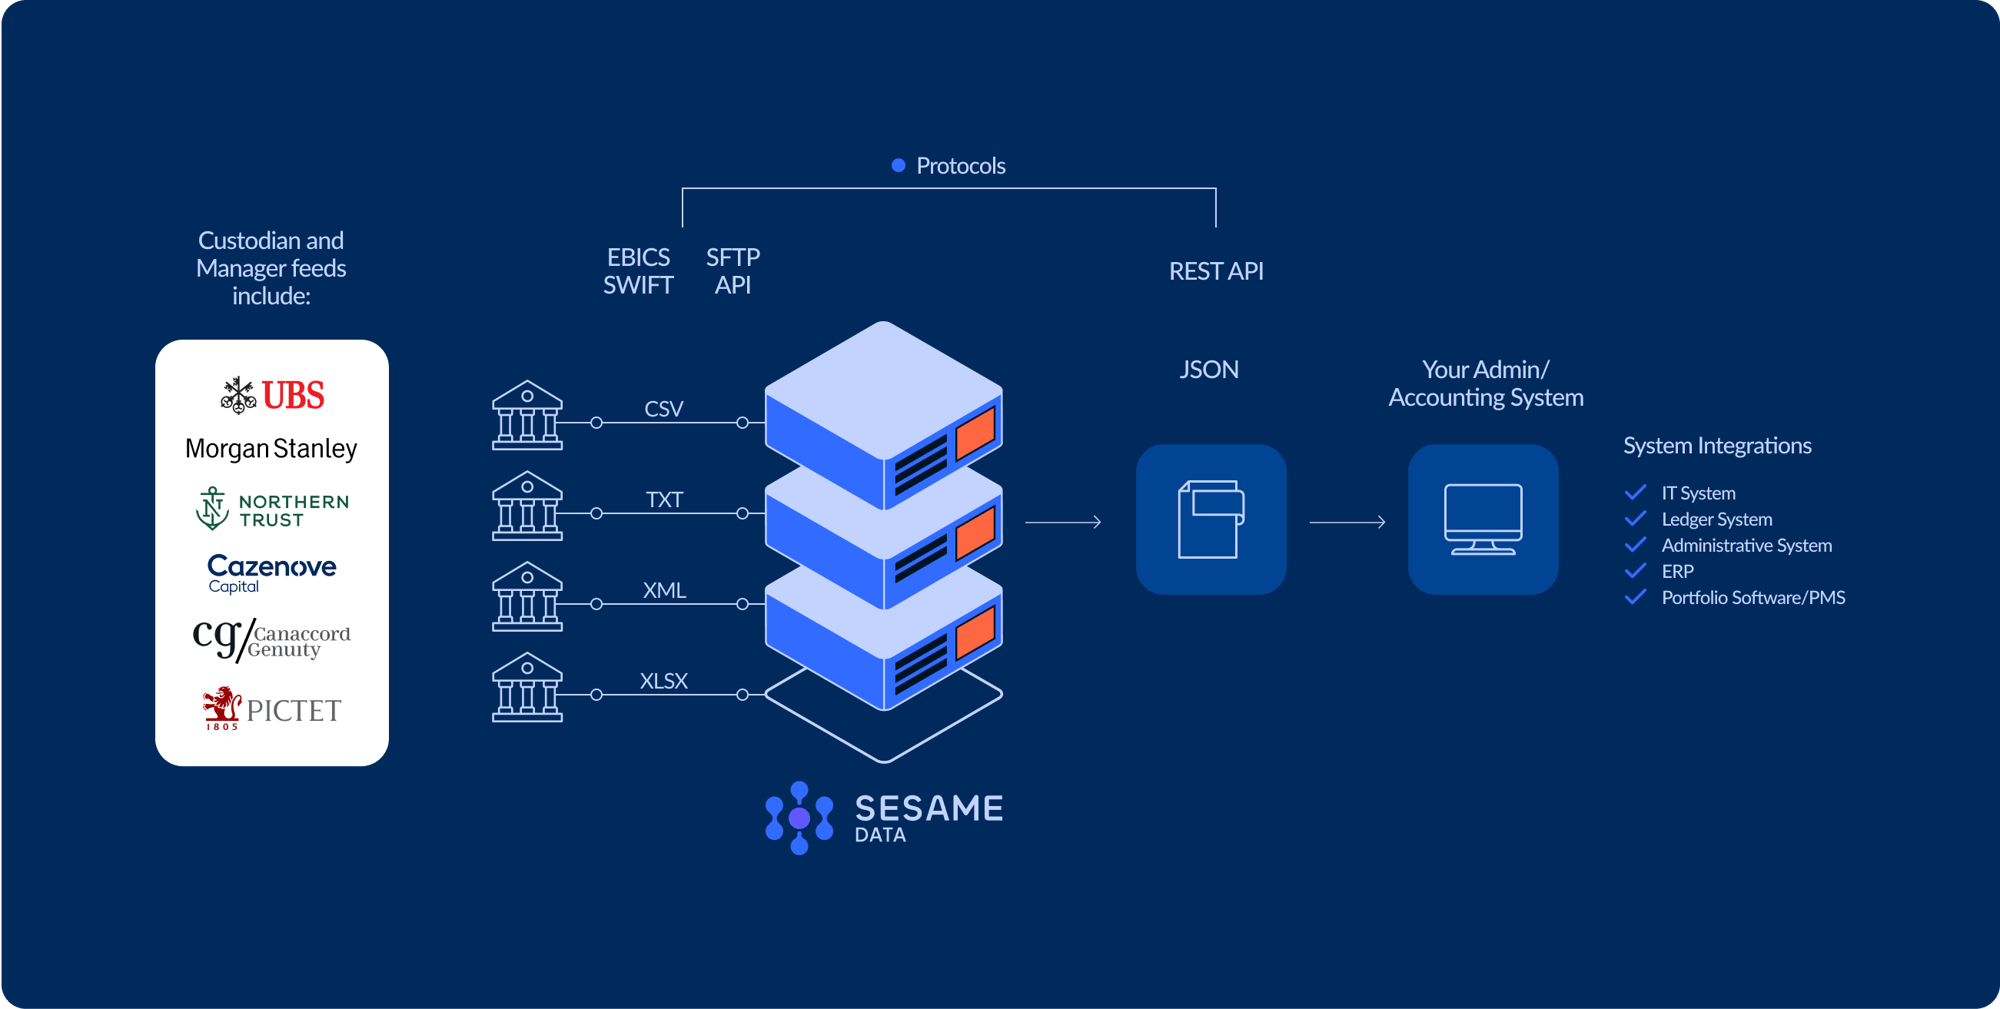 Sesame Data Architecture